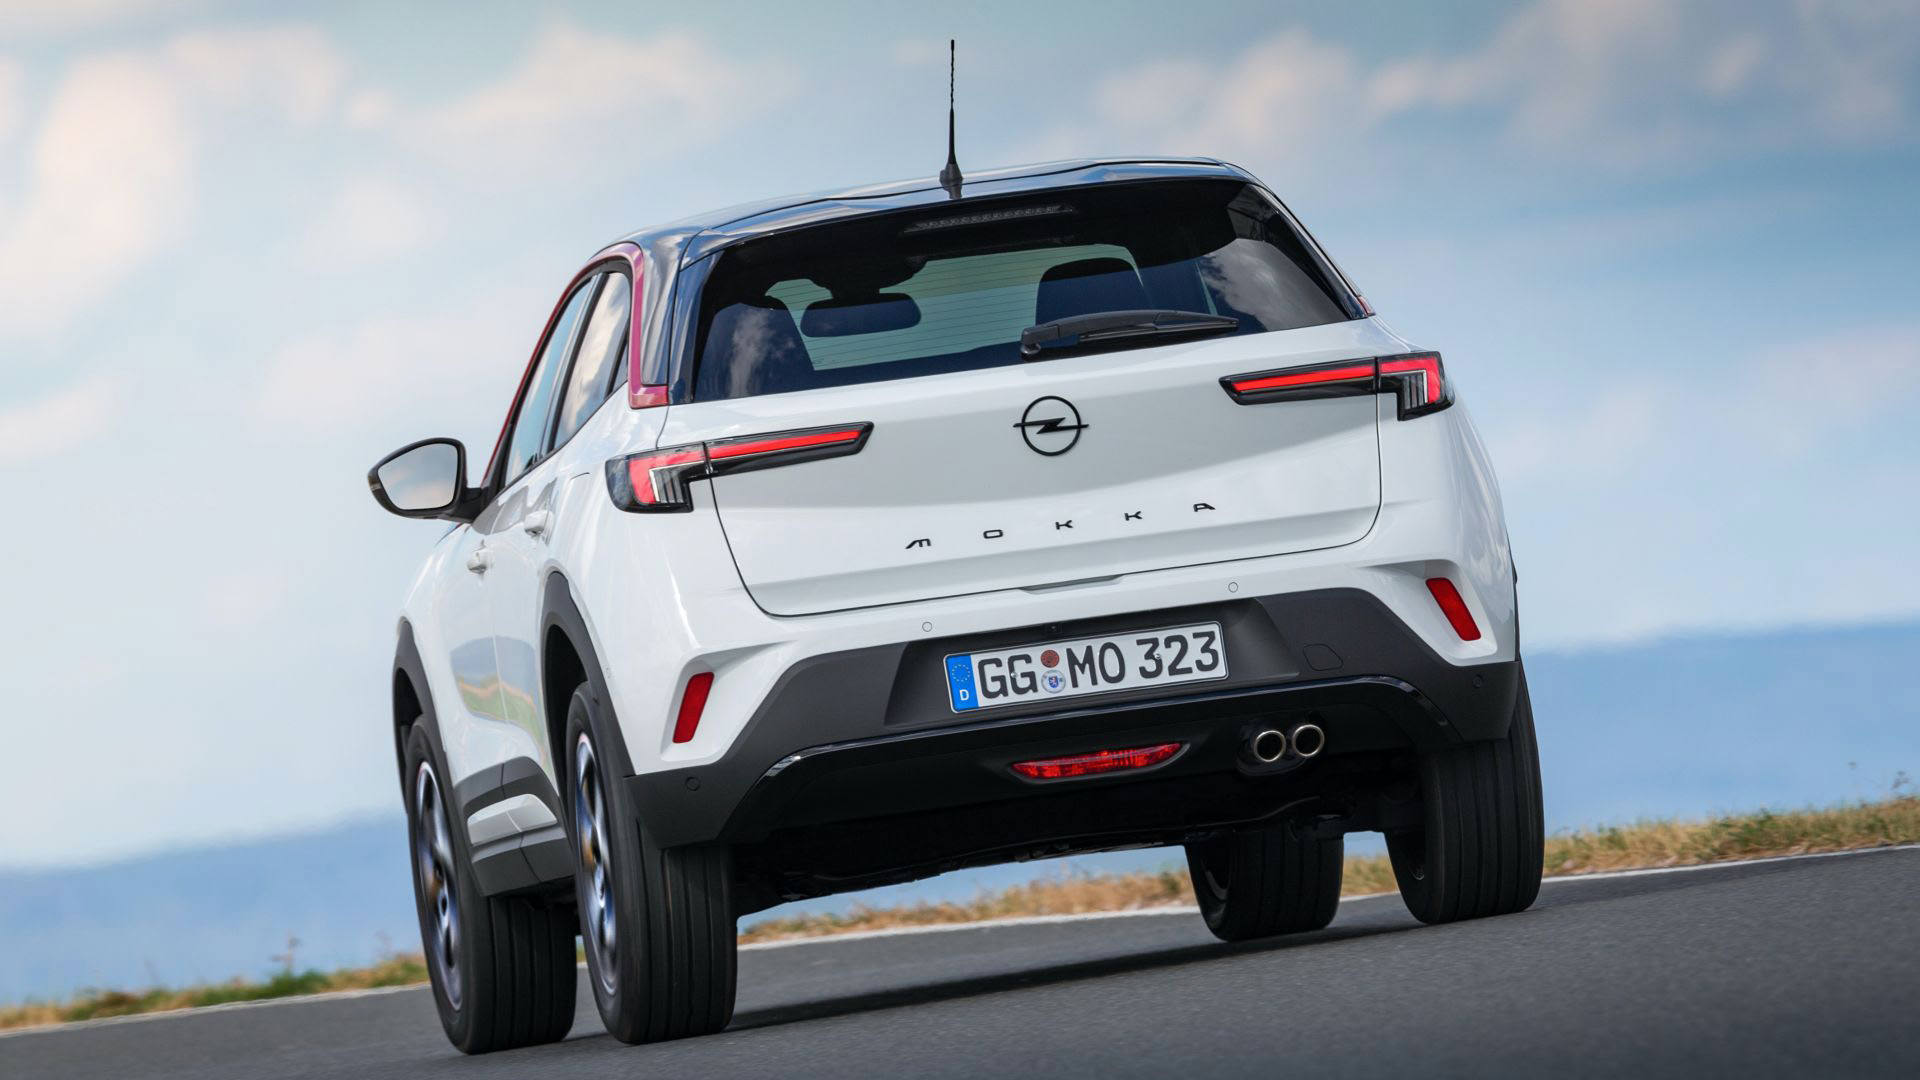 نمای عقب کراس اور کامپکت اوپل موکا 2021 / Opel Mokka با طرح دو رنگ سفید و مشکی در جاده با منظره آسمان آبی